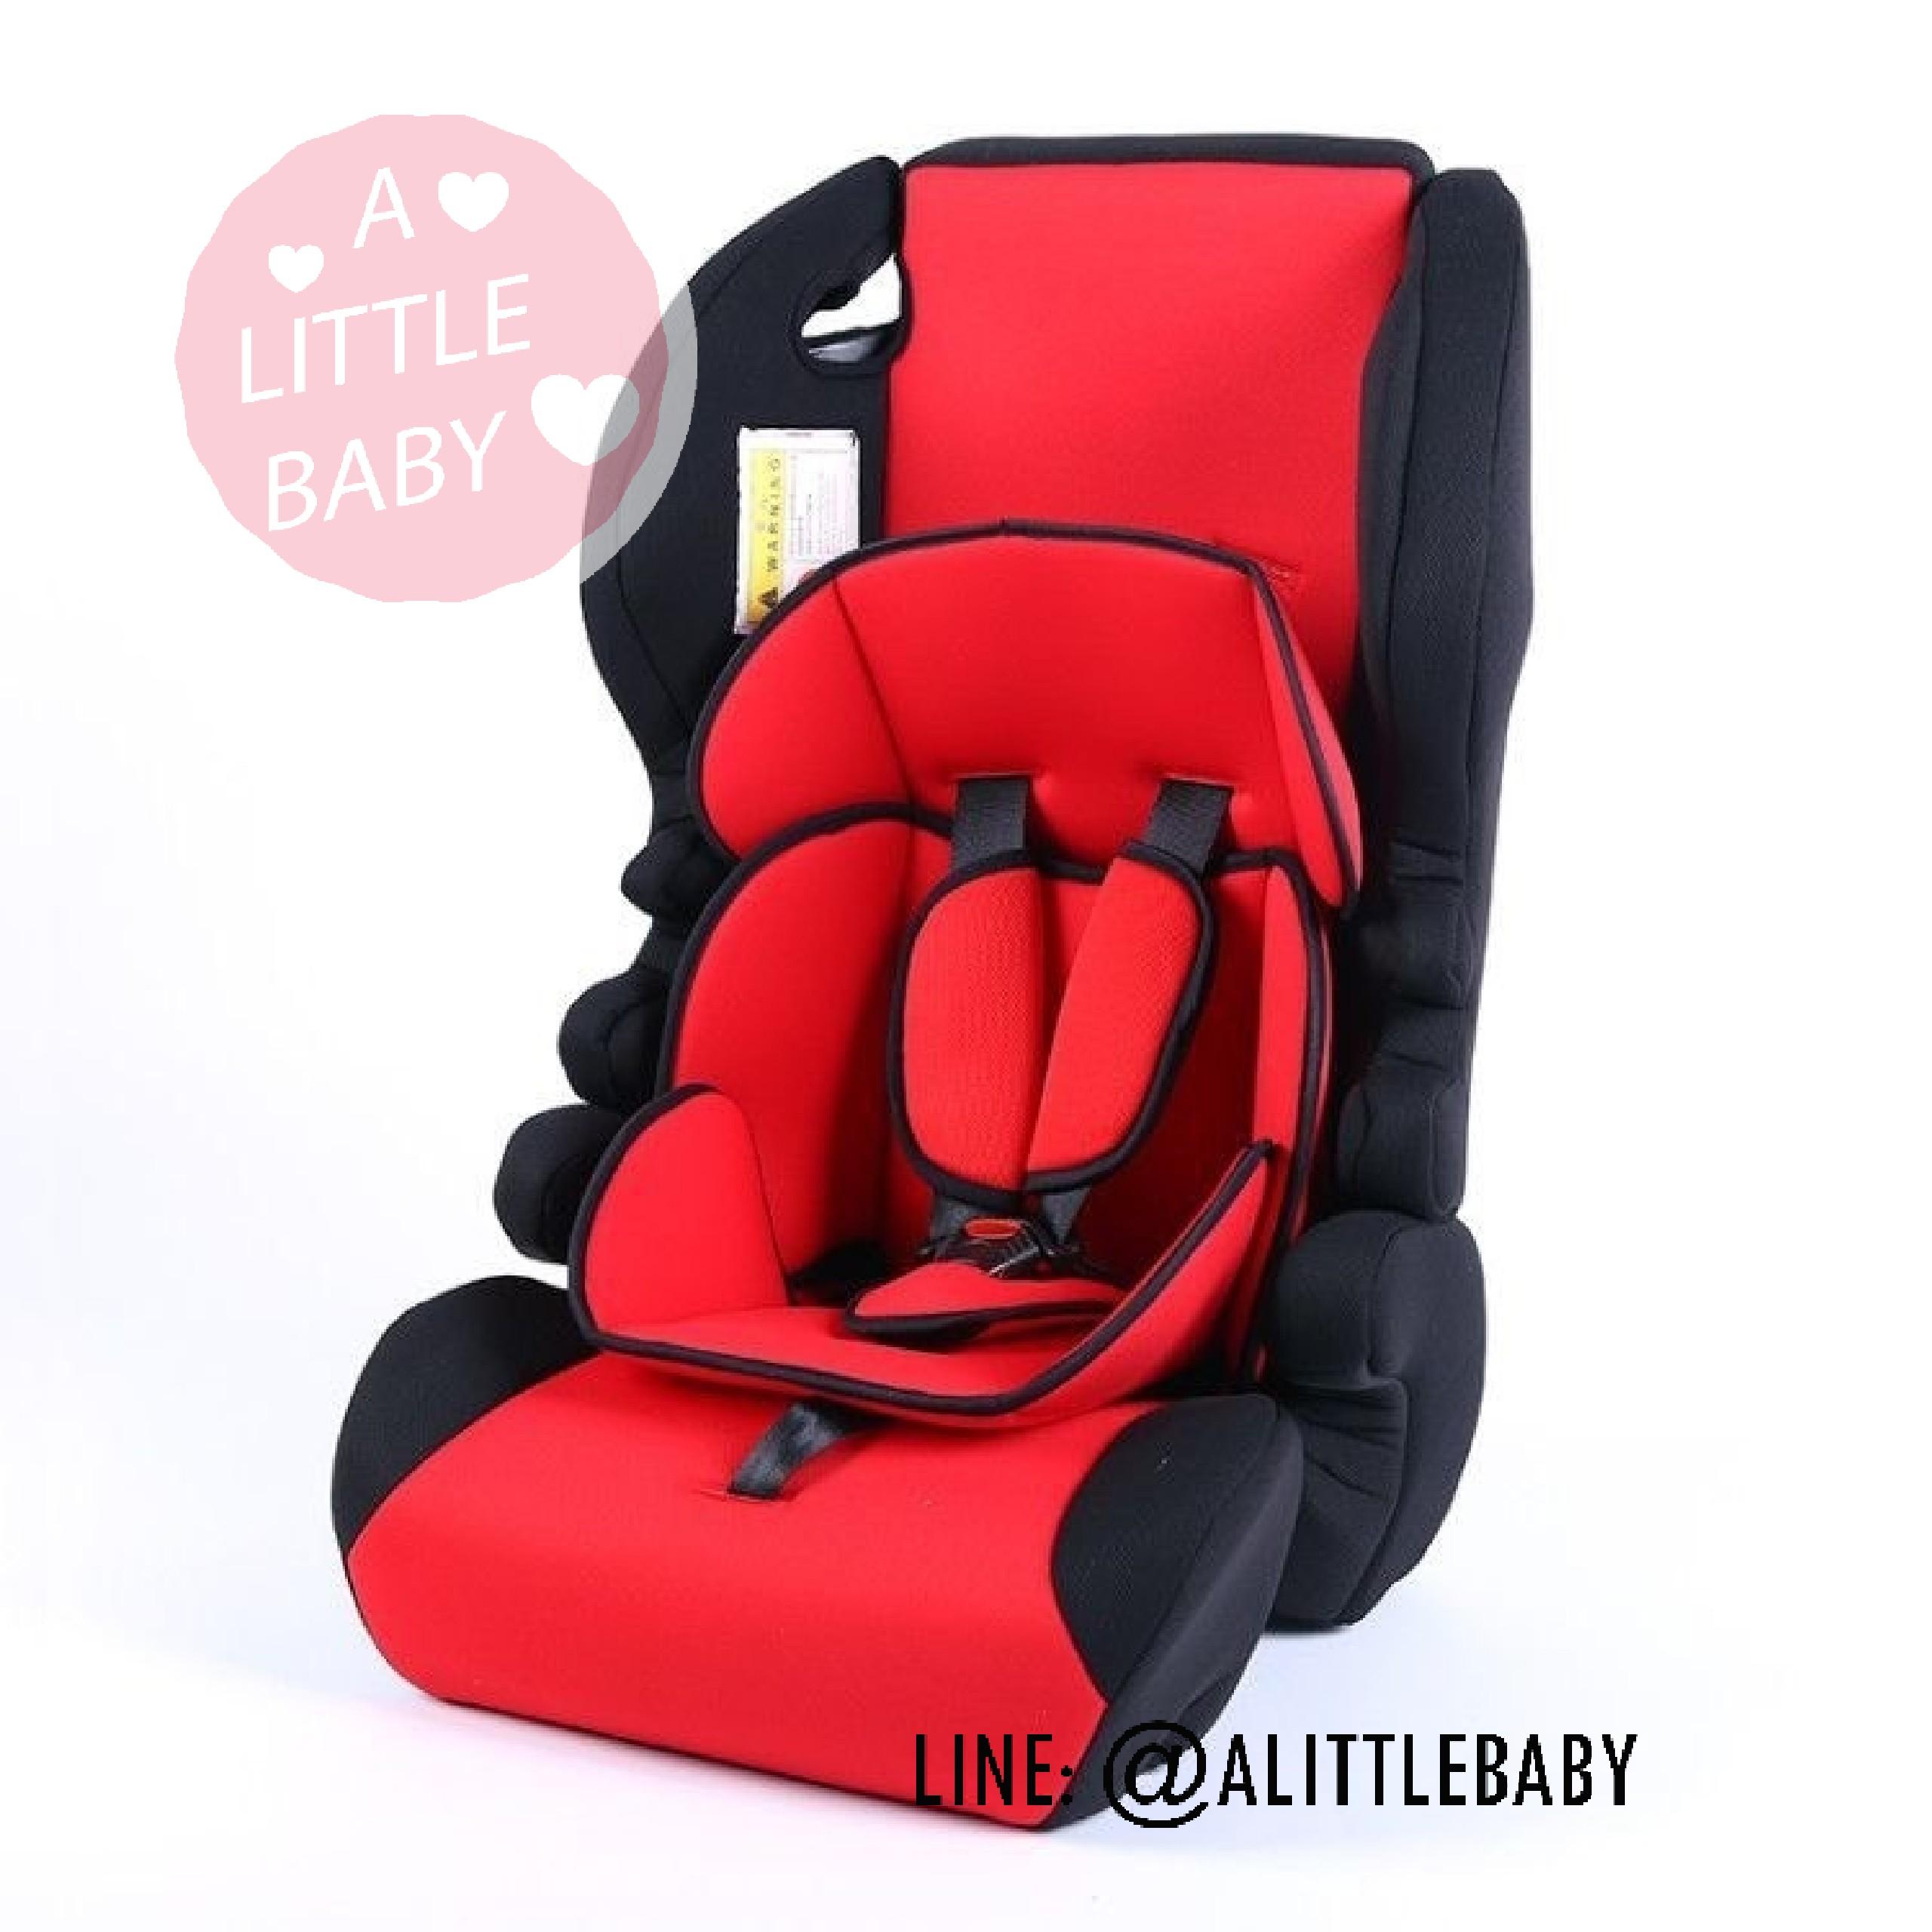 คาร์ซีท(car seat) เบาะรถยนต์นิรภัยสำหรับเด็กขนาดใหญ่ ตั้งแต่อายุ 9 เดือน ถึง 12 ปี รุ่น： Y7